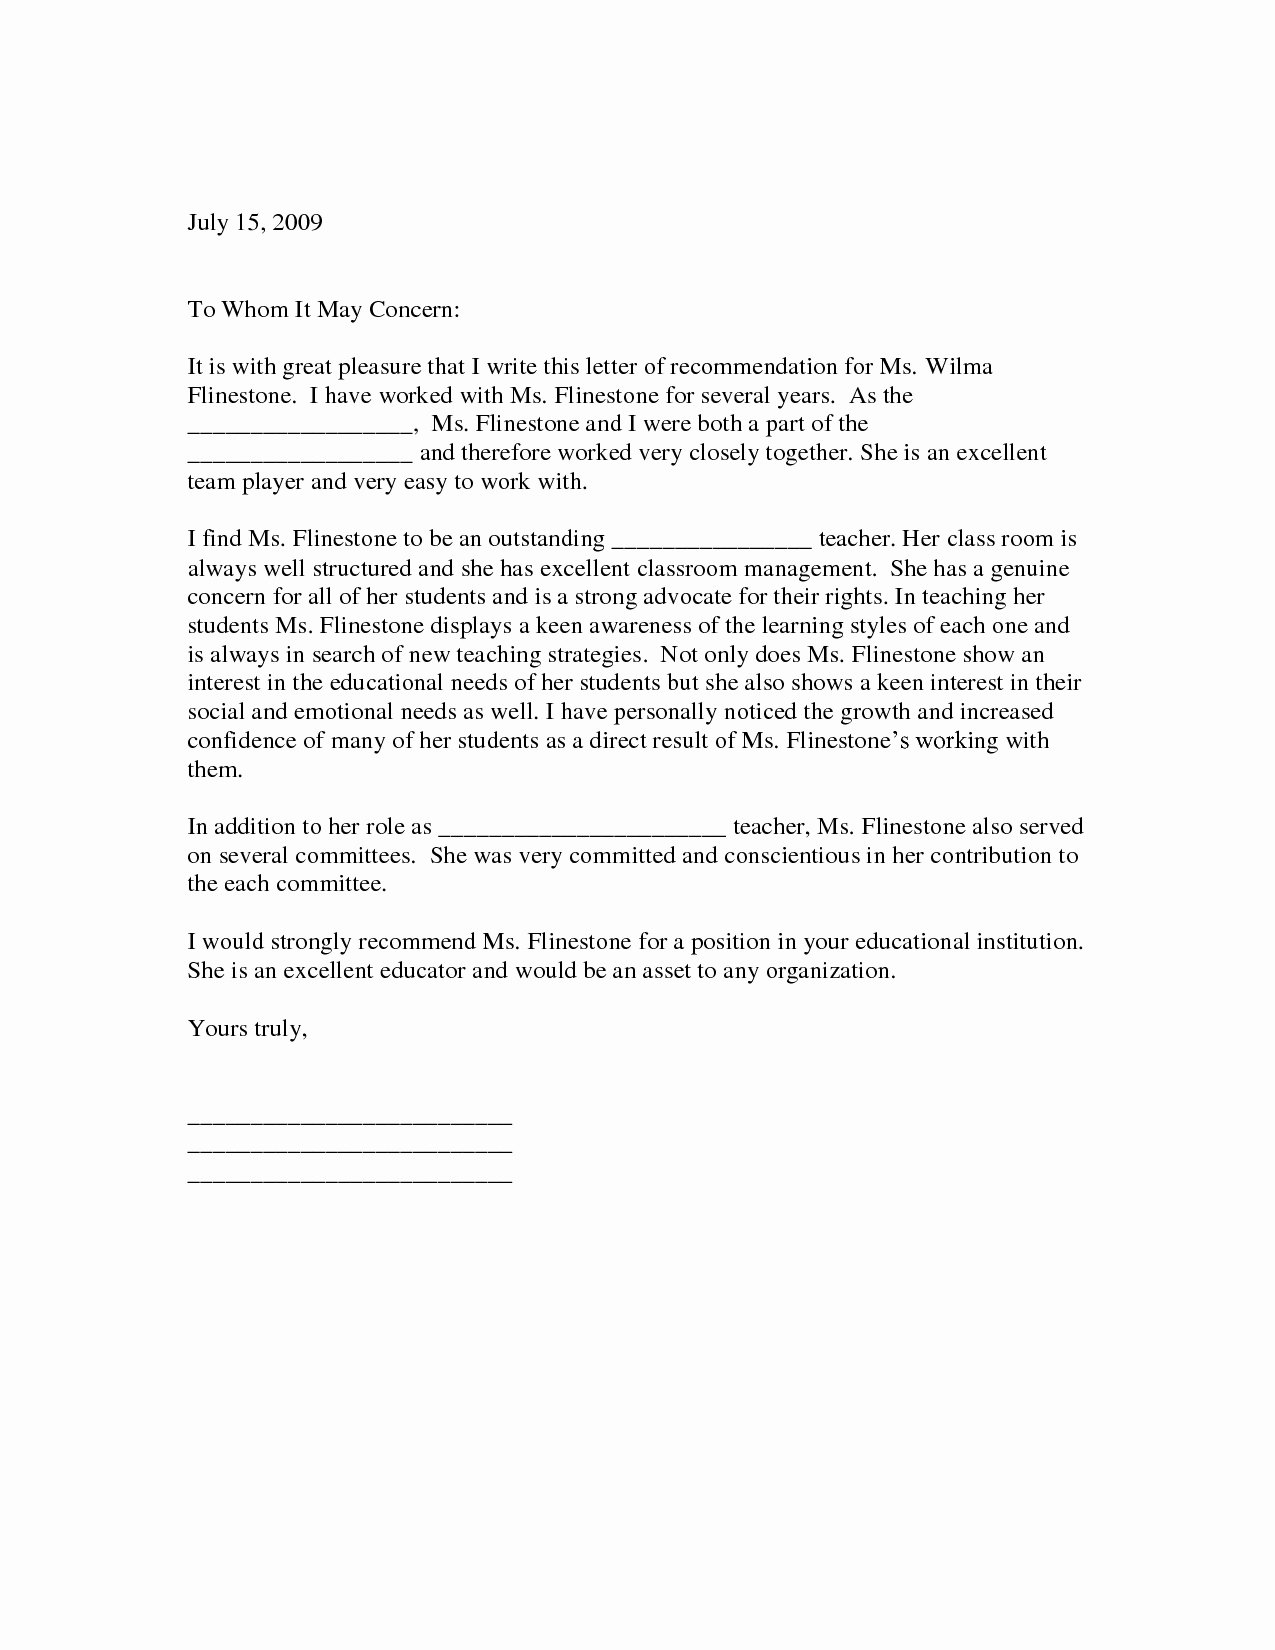 Sample Recommendation Letter for Teacher Best Of Sample Letter Of Re Mendation for Teacher